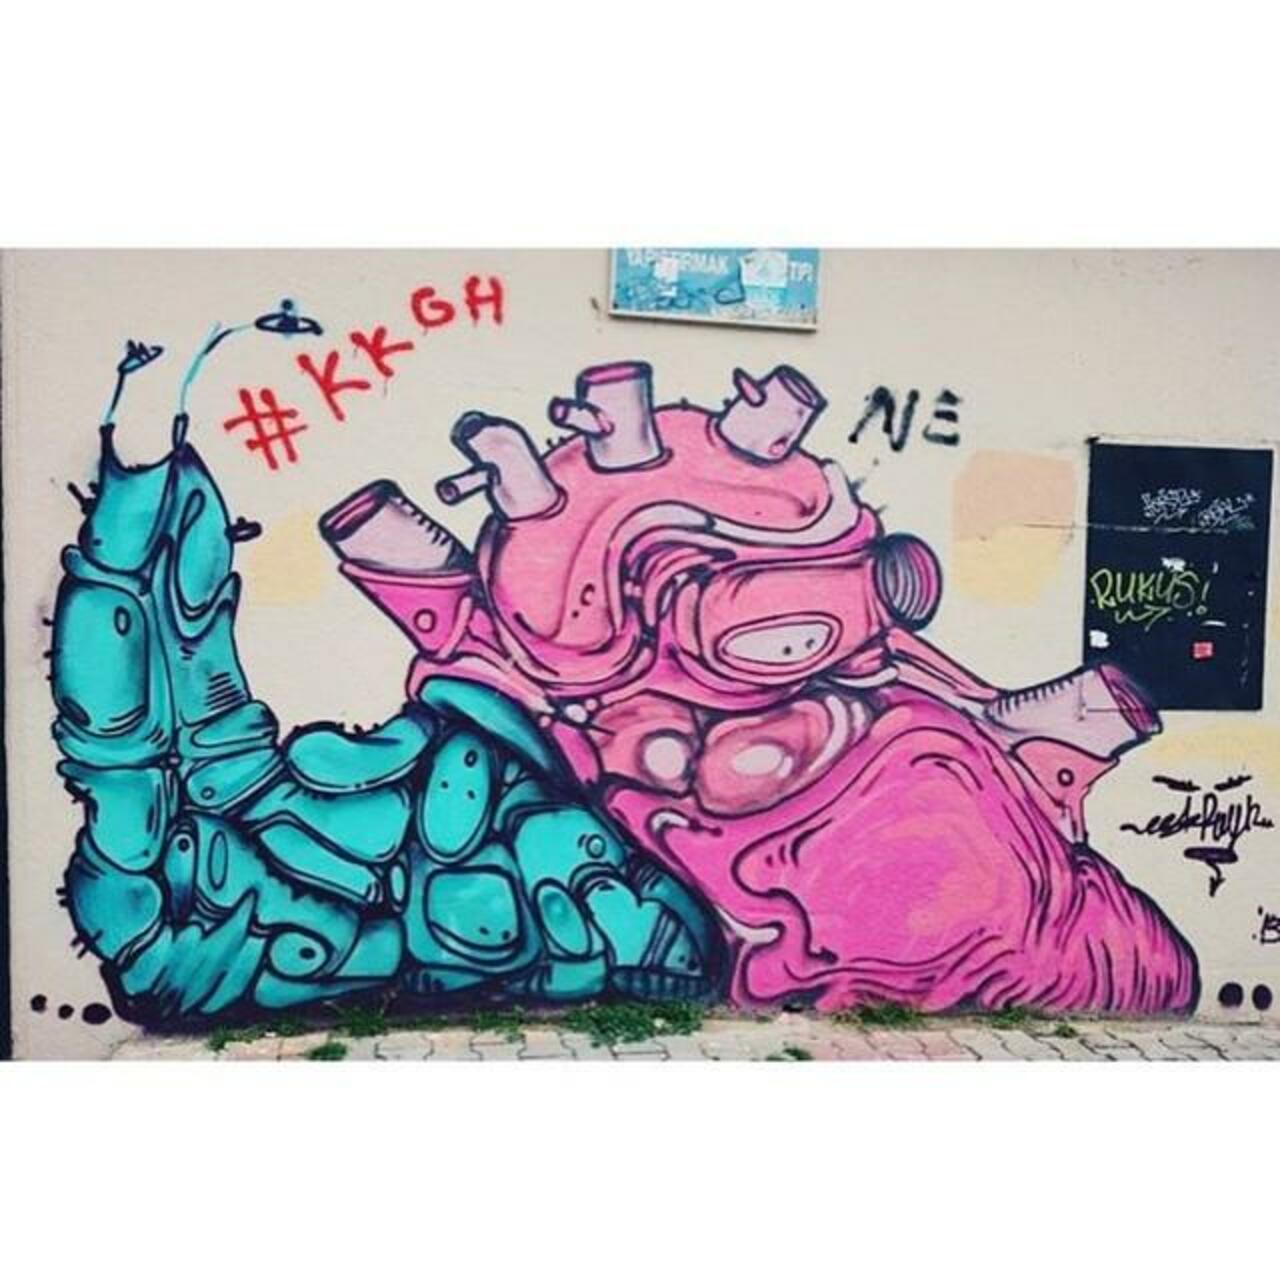 ✌️ #eskreyn #vsco #vscocam #streetart #streetartistanbul #istanbulstreetart #graffiti #graffitiartist #mural #urban… http://t.co/BTHb46TQnx